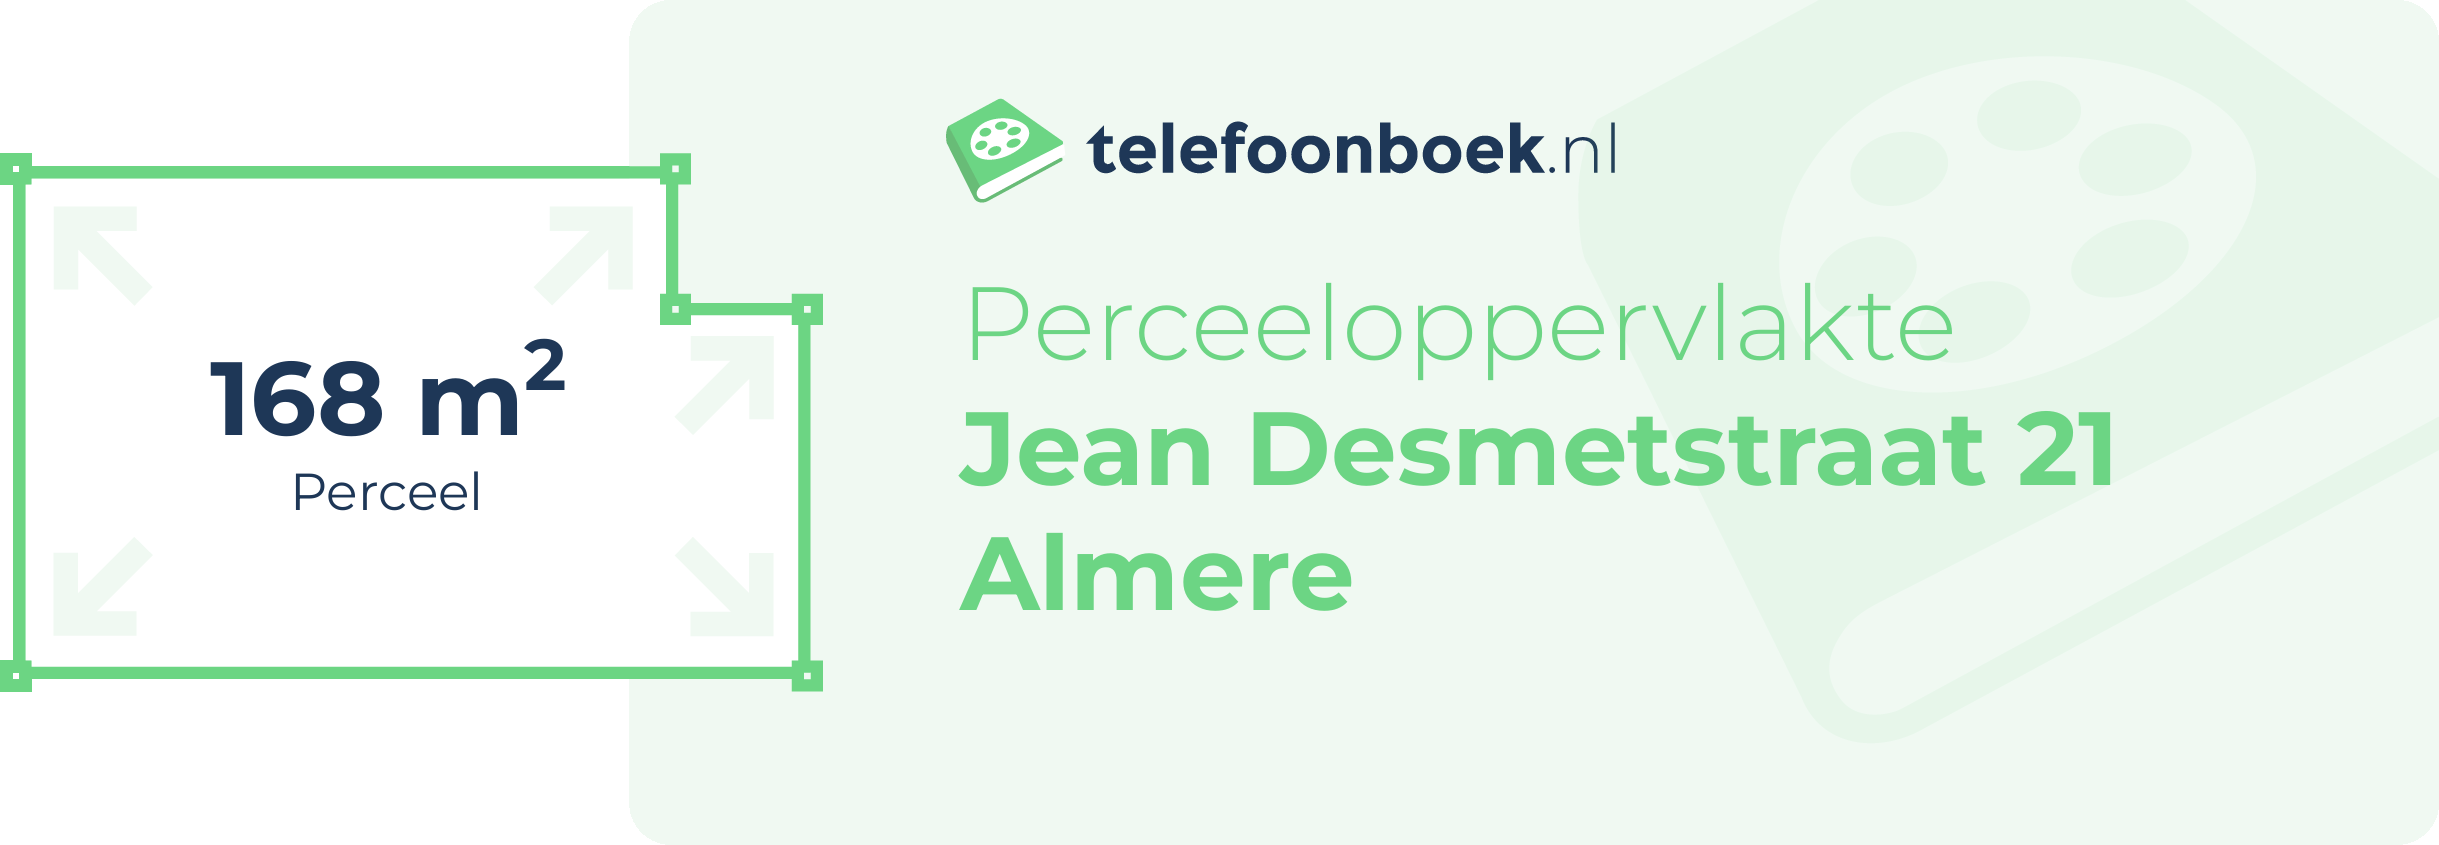 Perceeloppervlakte Jean Desmetstraat 21 Almere